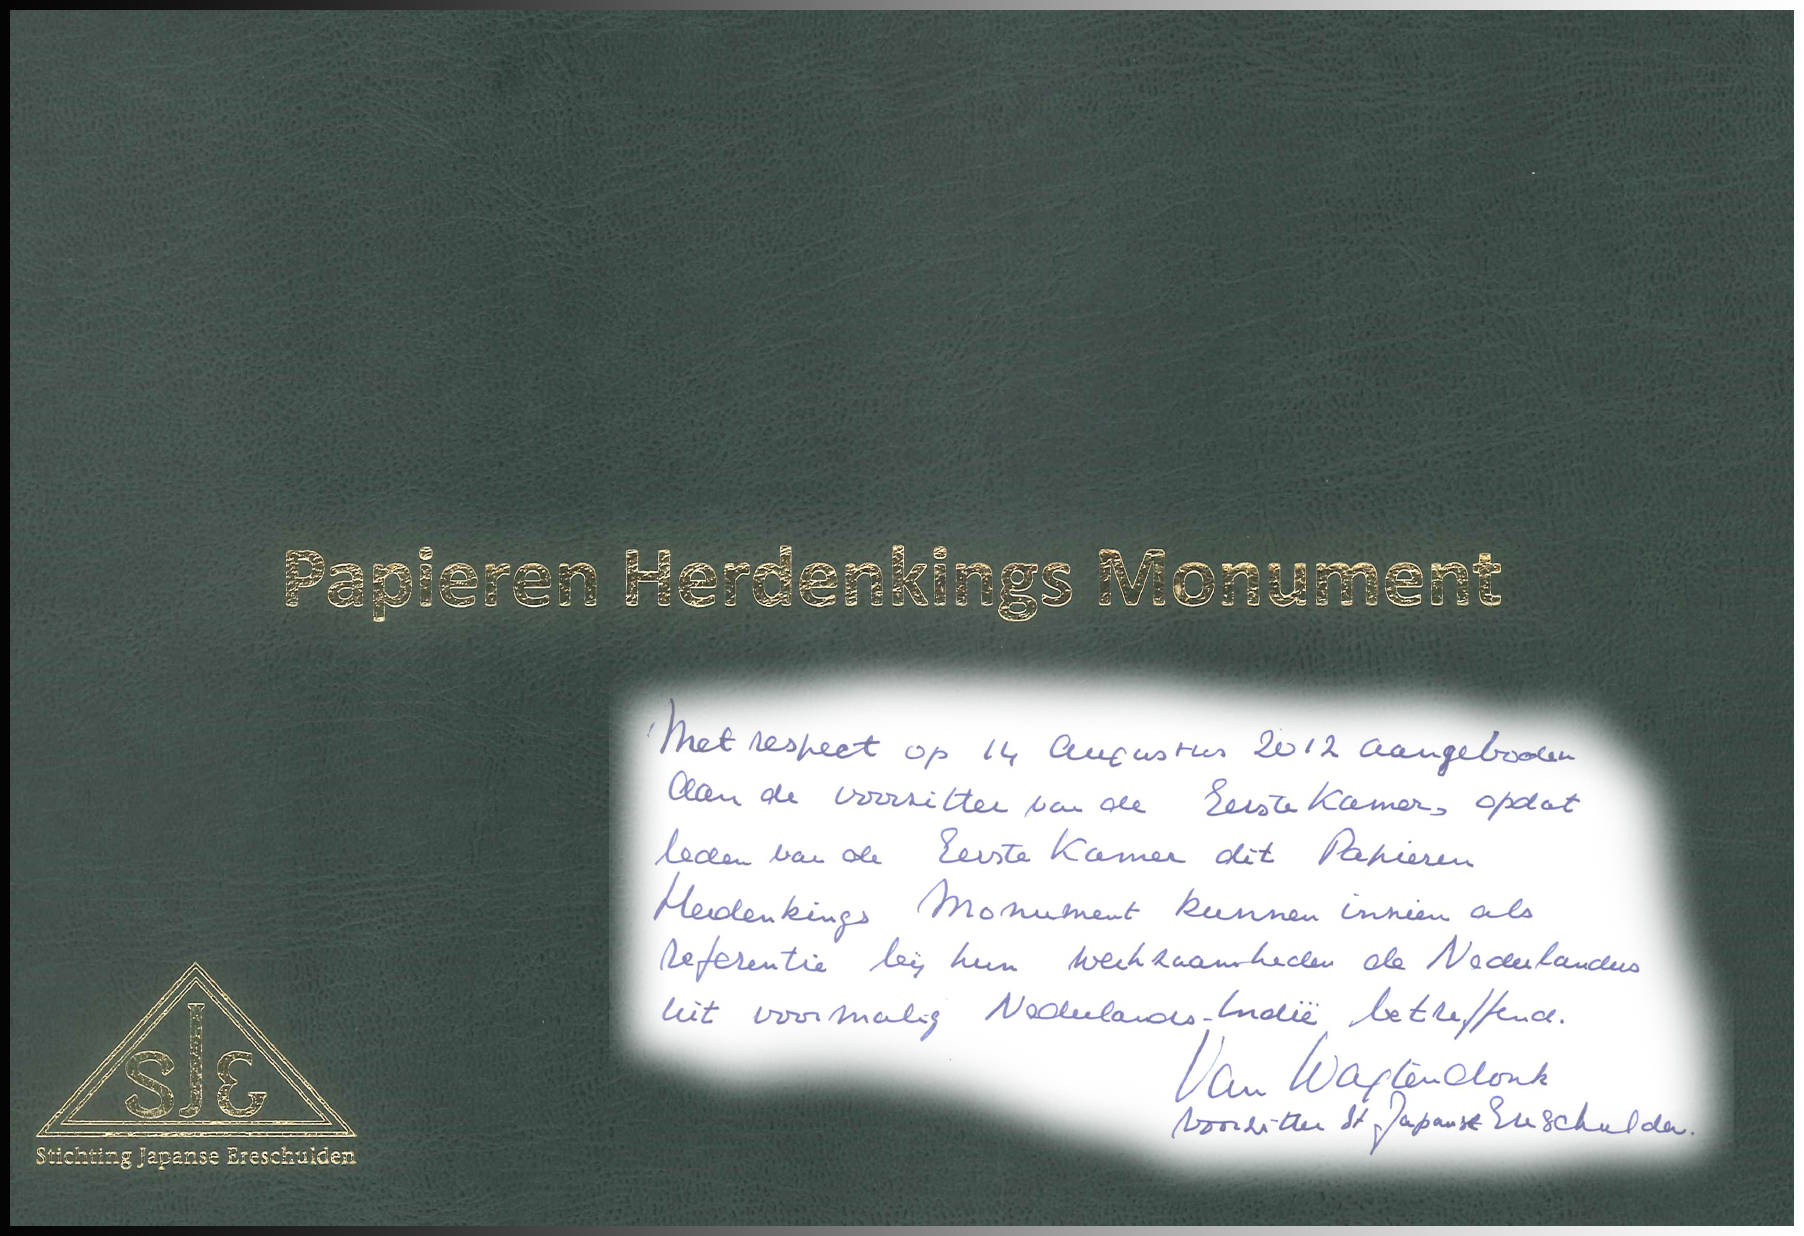 Afbeelding van boek "Papieren Herdenkings Monument" op 14 augustus 2012 aangeboden aan Voorzitter Eerste Kamer.